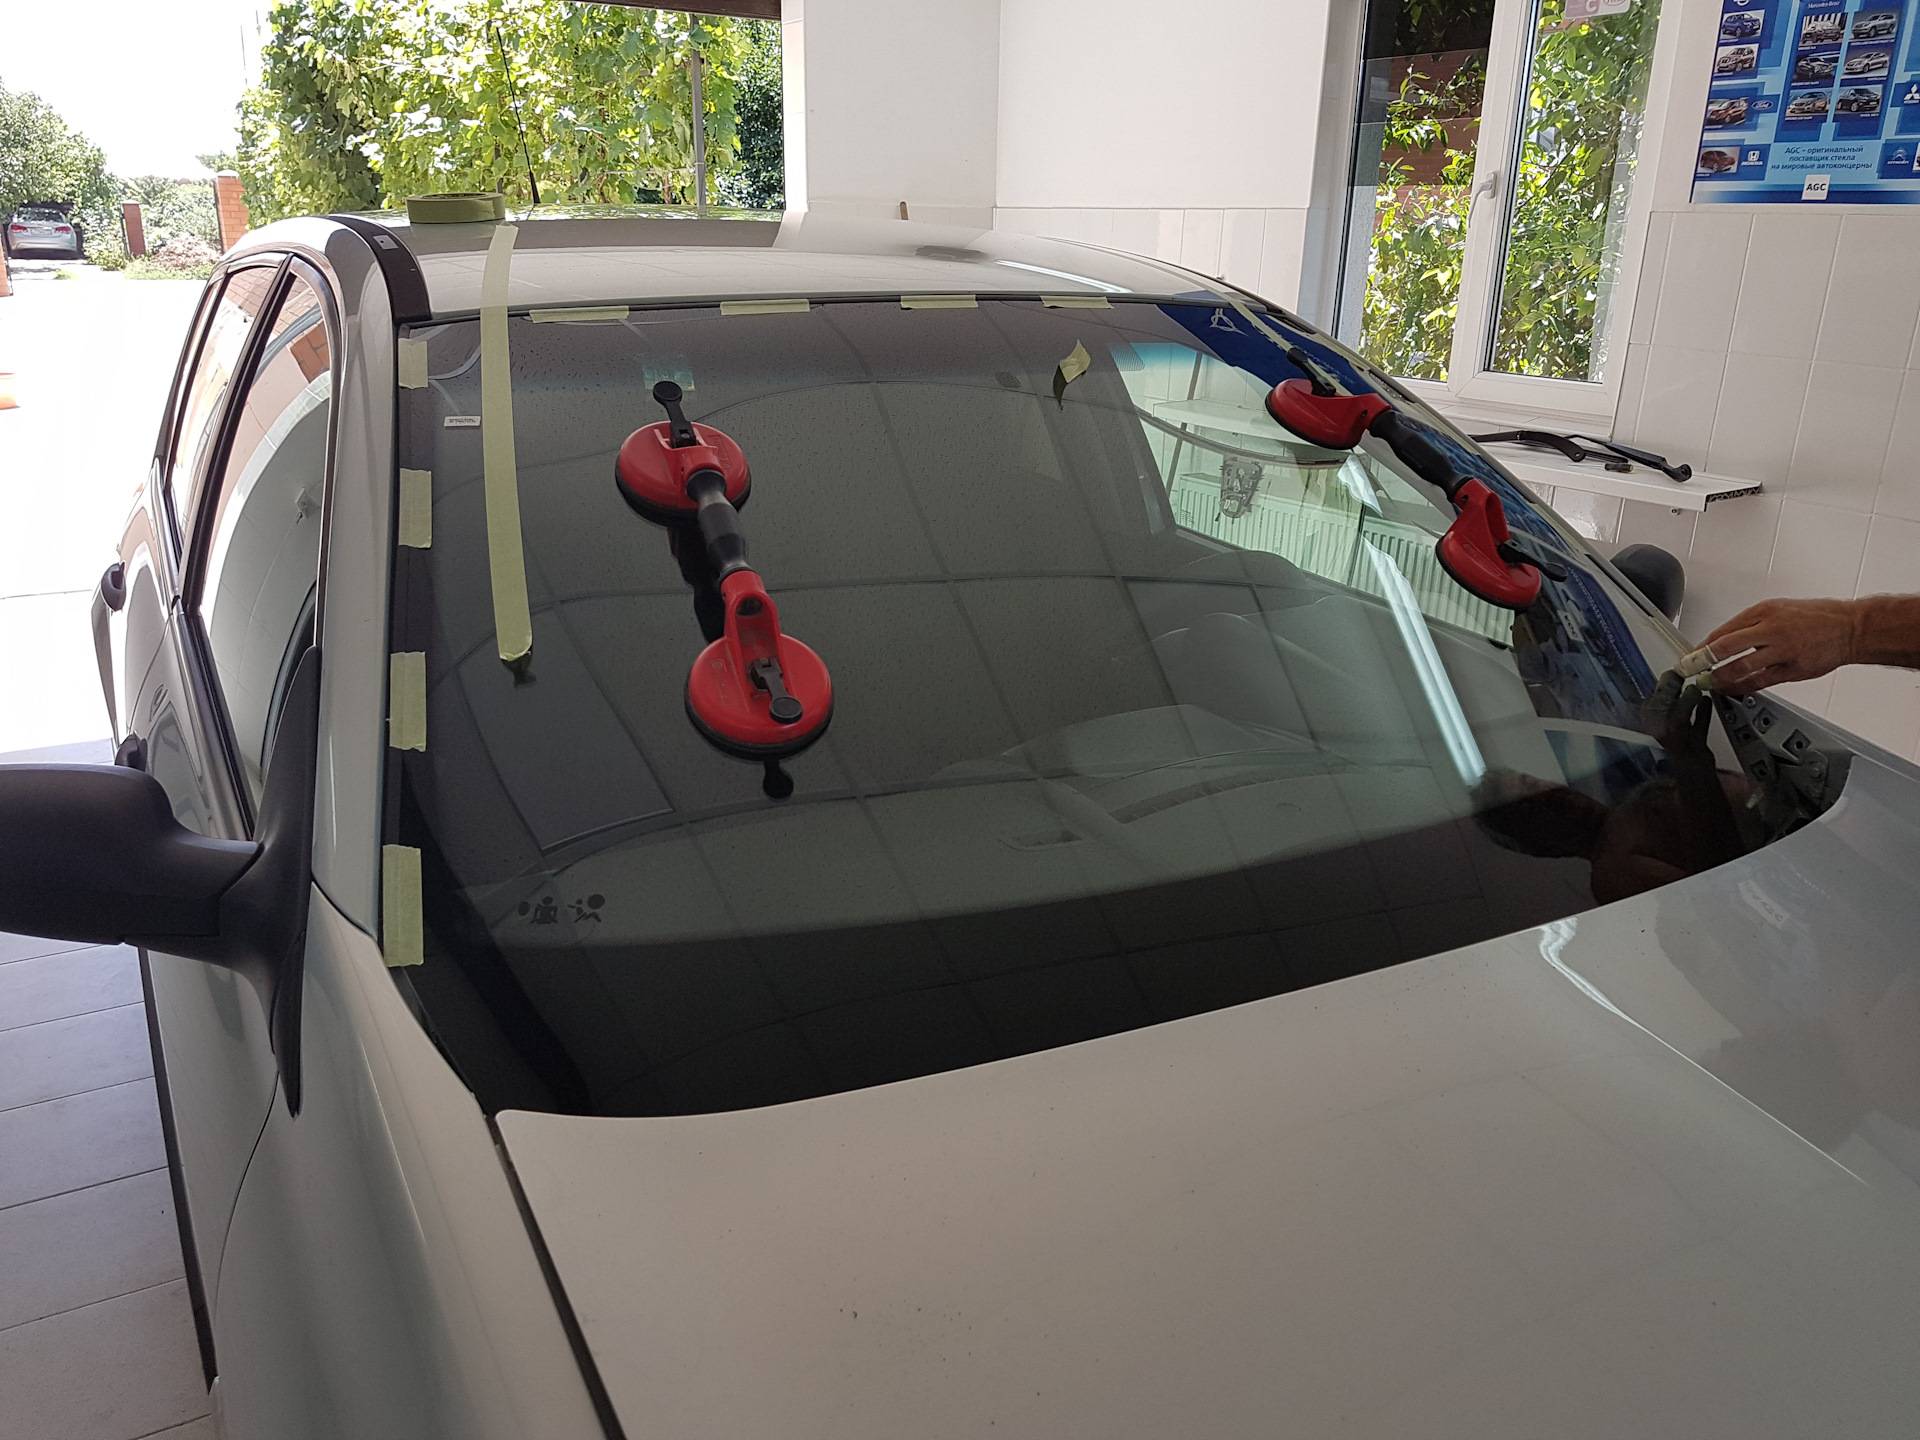 Как поменять стекло на автомобиле своими руками - пошаговая инструкция